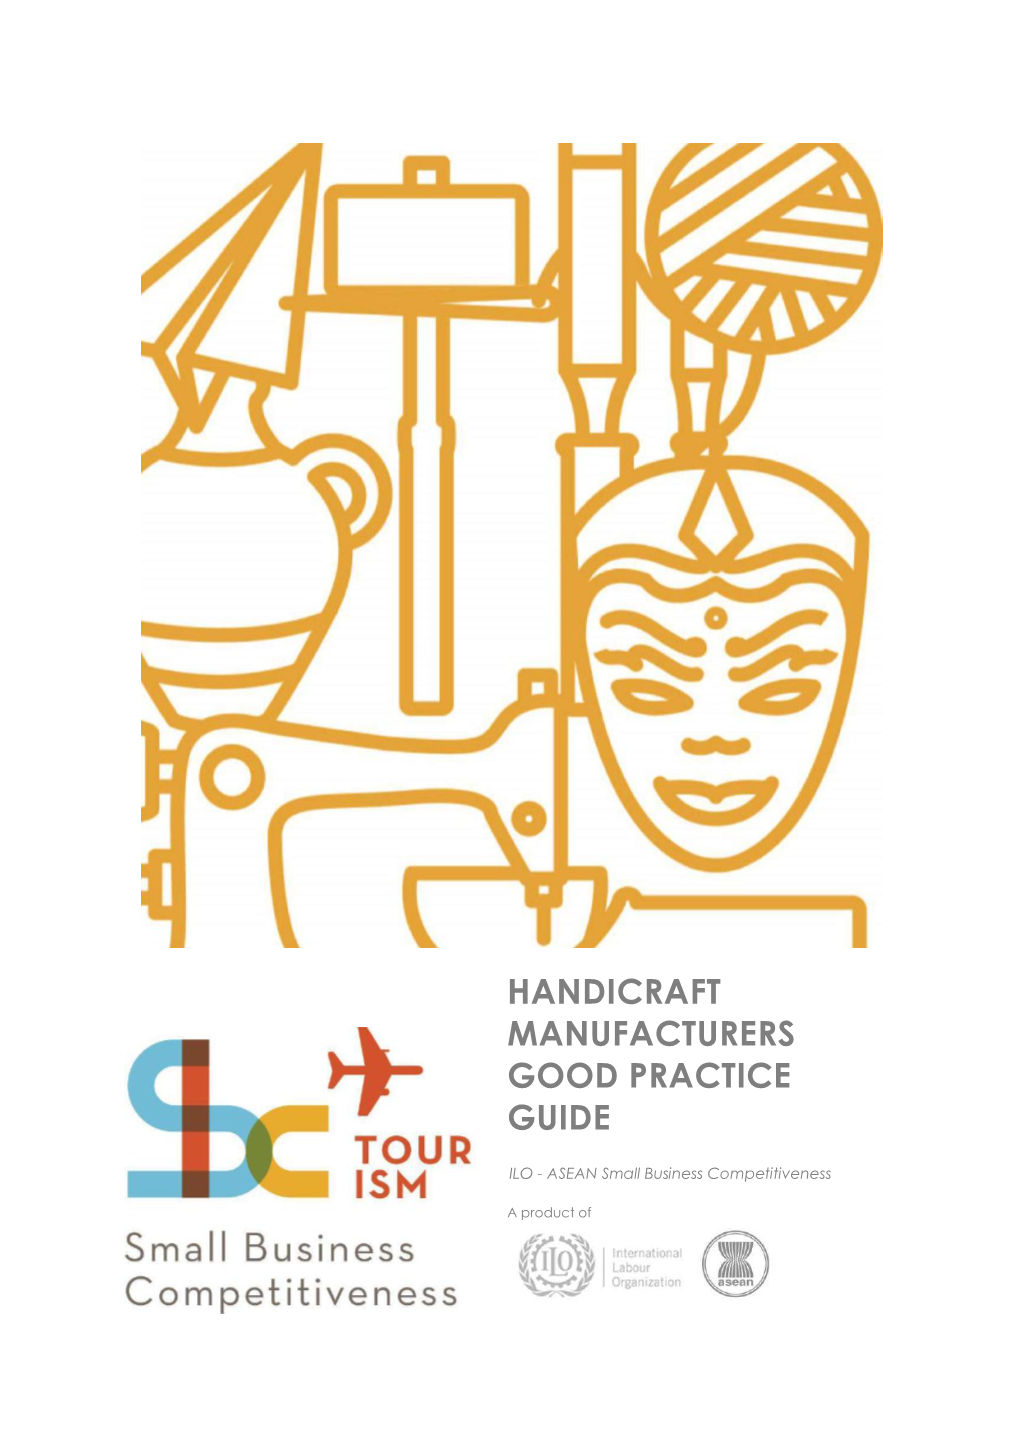 Handicraft Makers Good Practice Guide